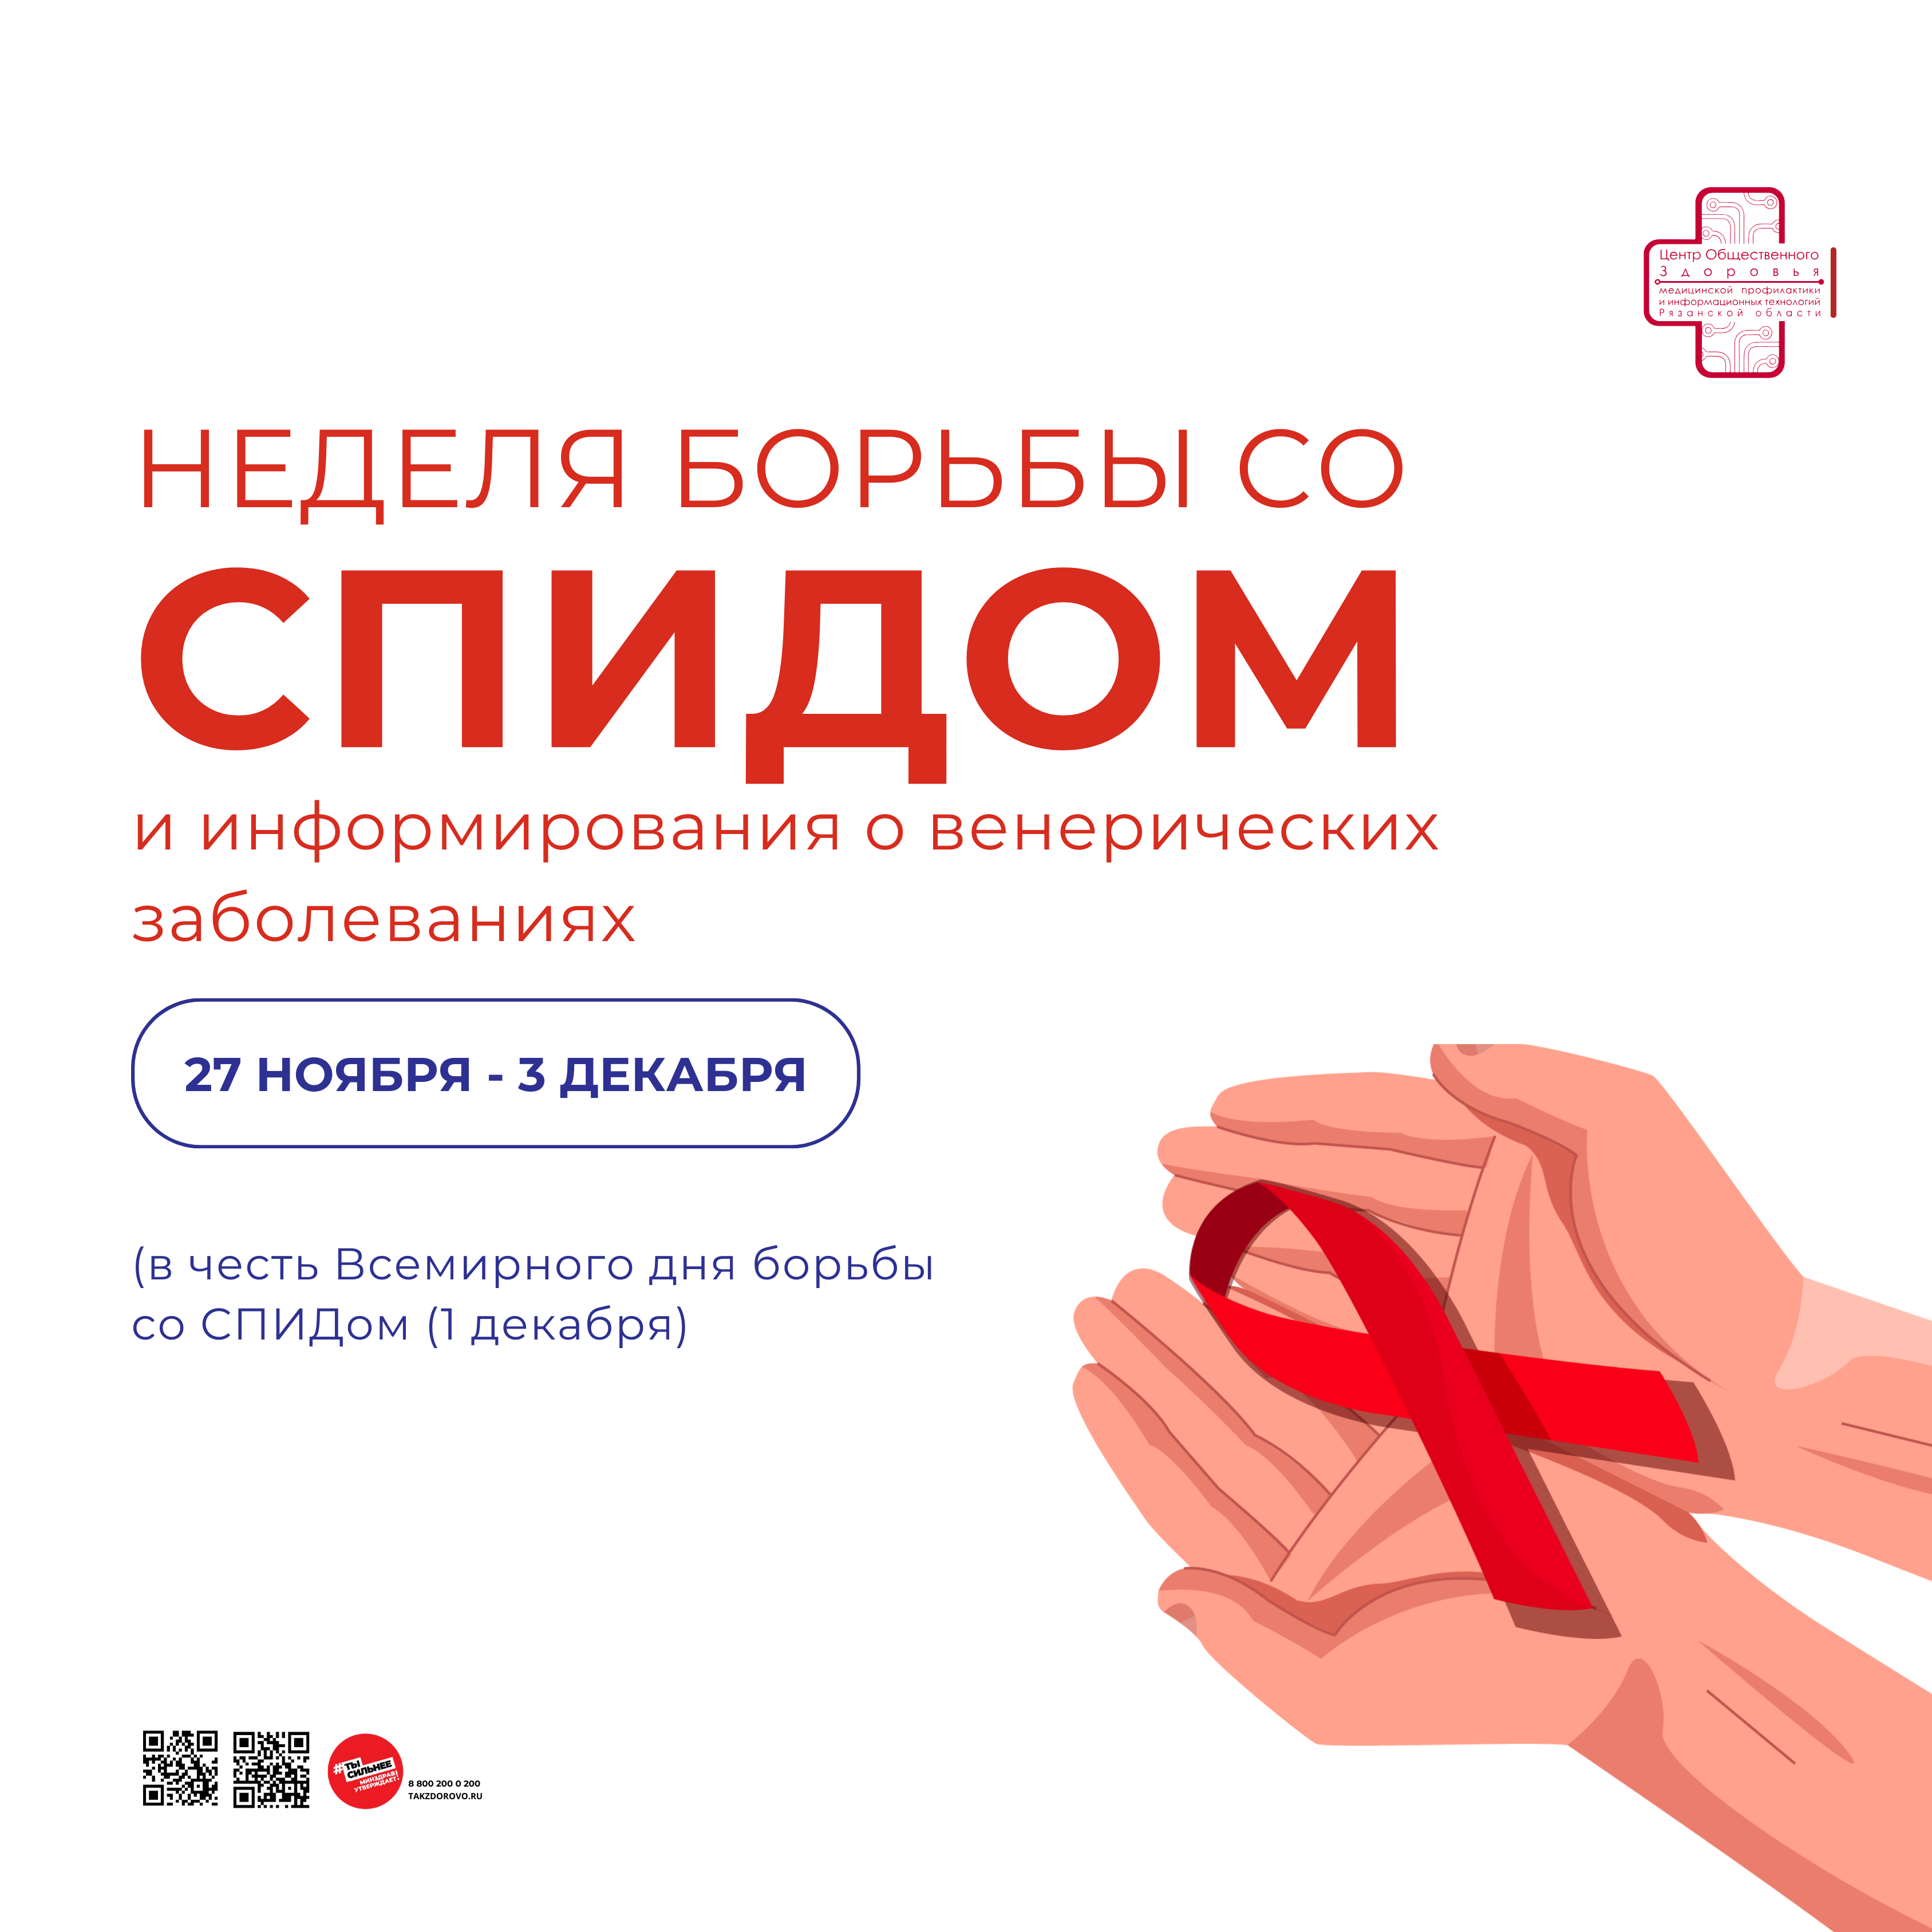 Неделя, посвященная борьбе со СПИДом и информированию о венерических заболеваниях.